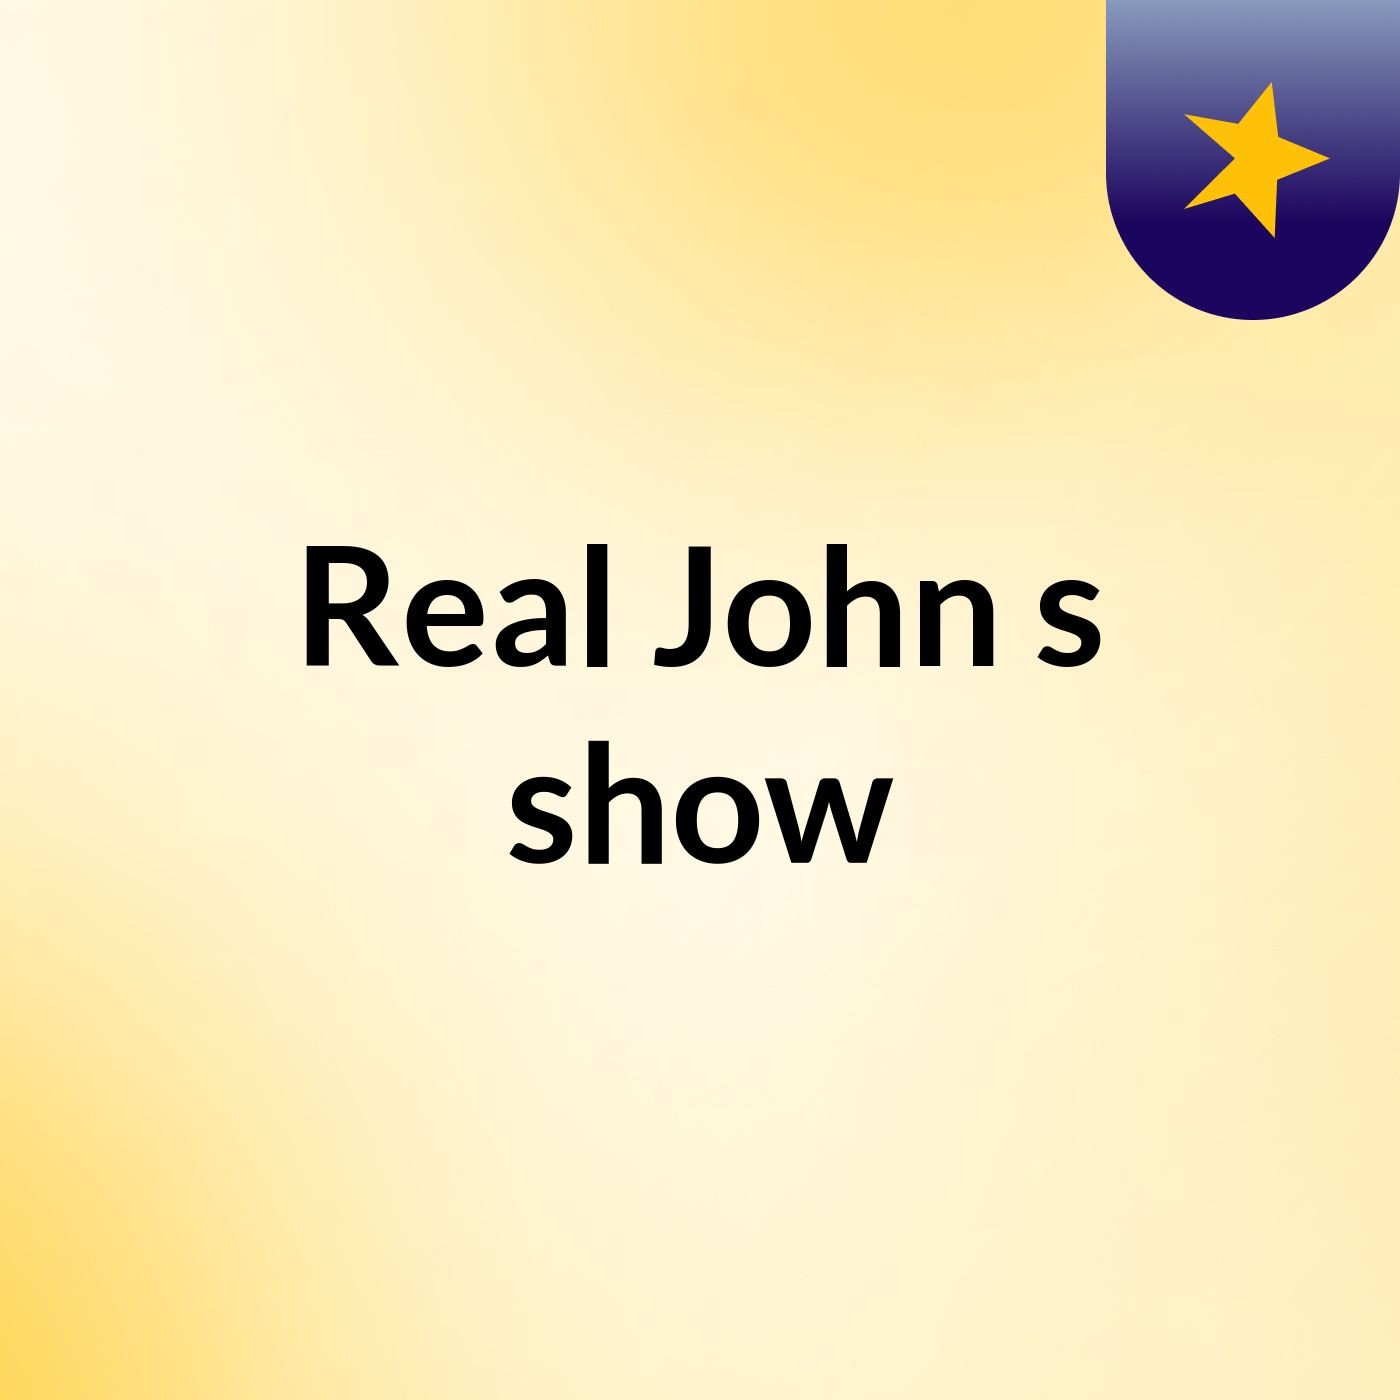 Real John's show